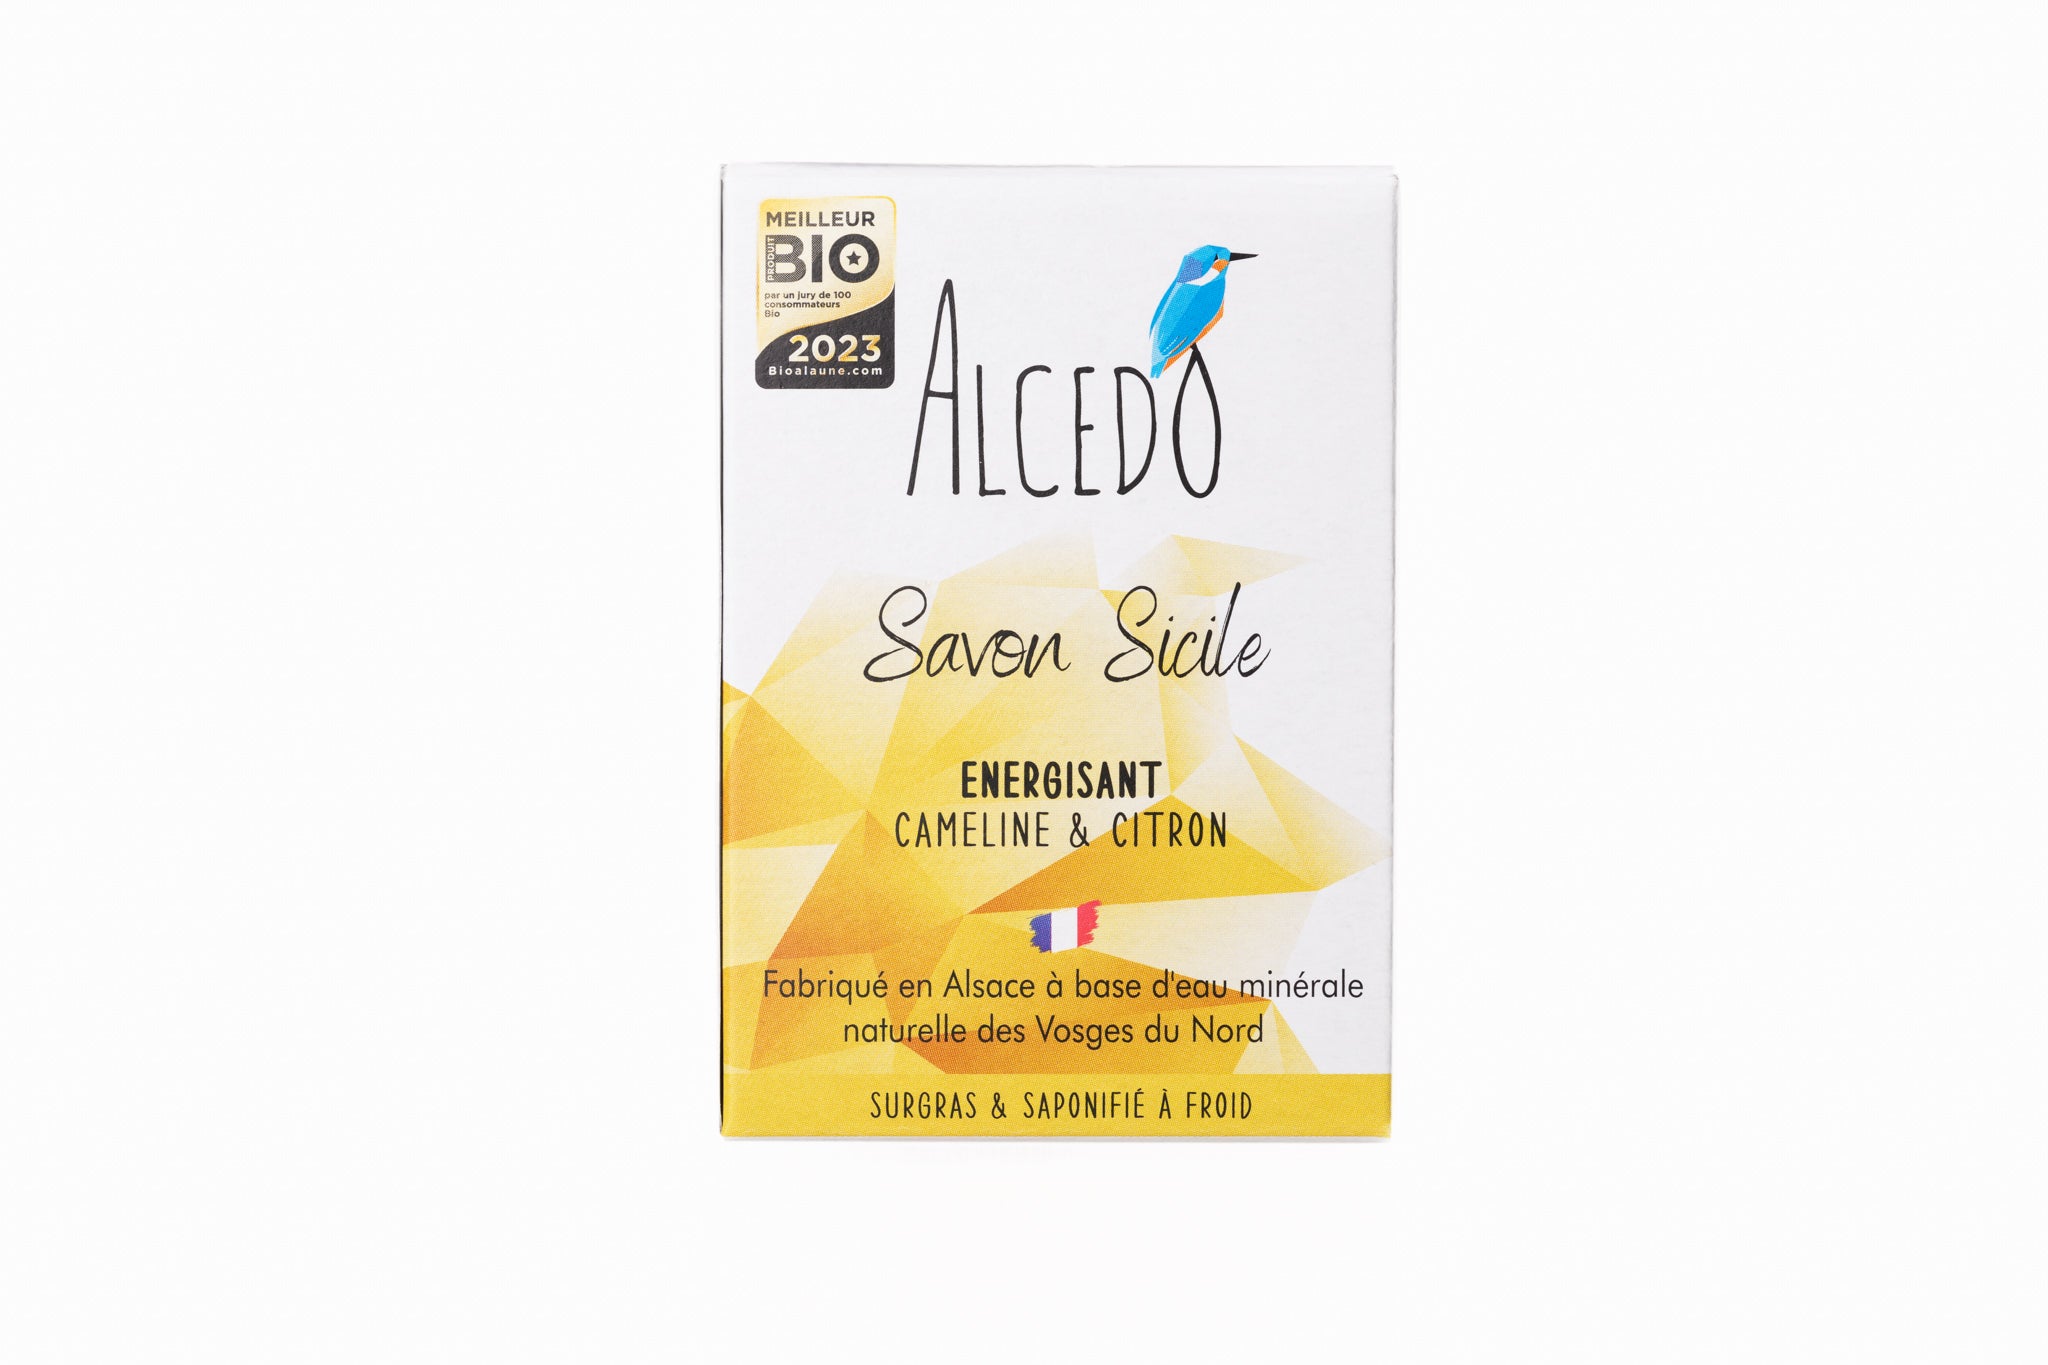 Savon Sicile surgras à froid - Énergisant - Cameline & Citron Alcedo